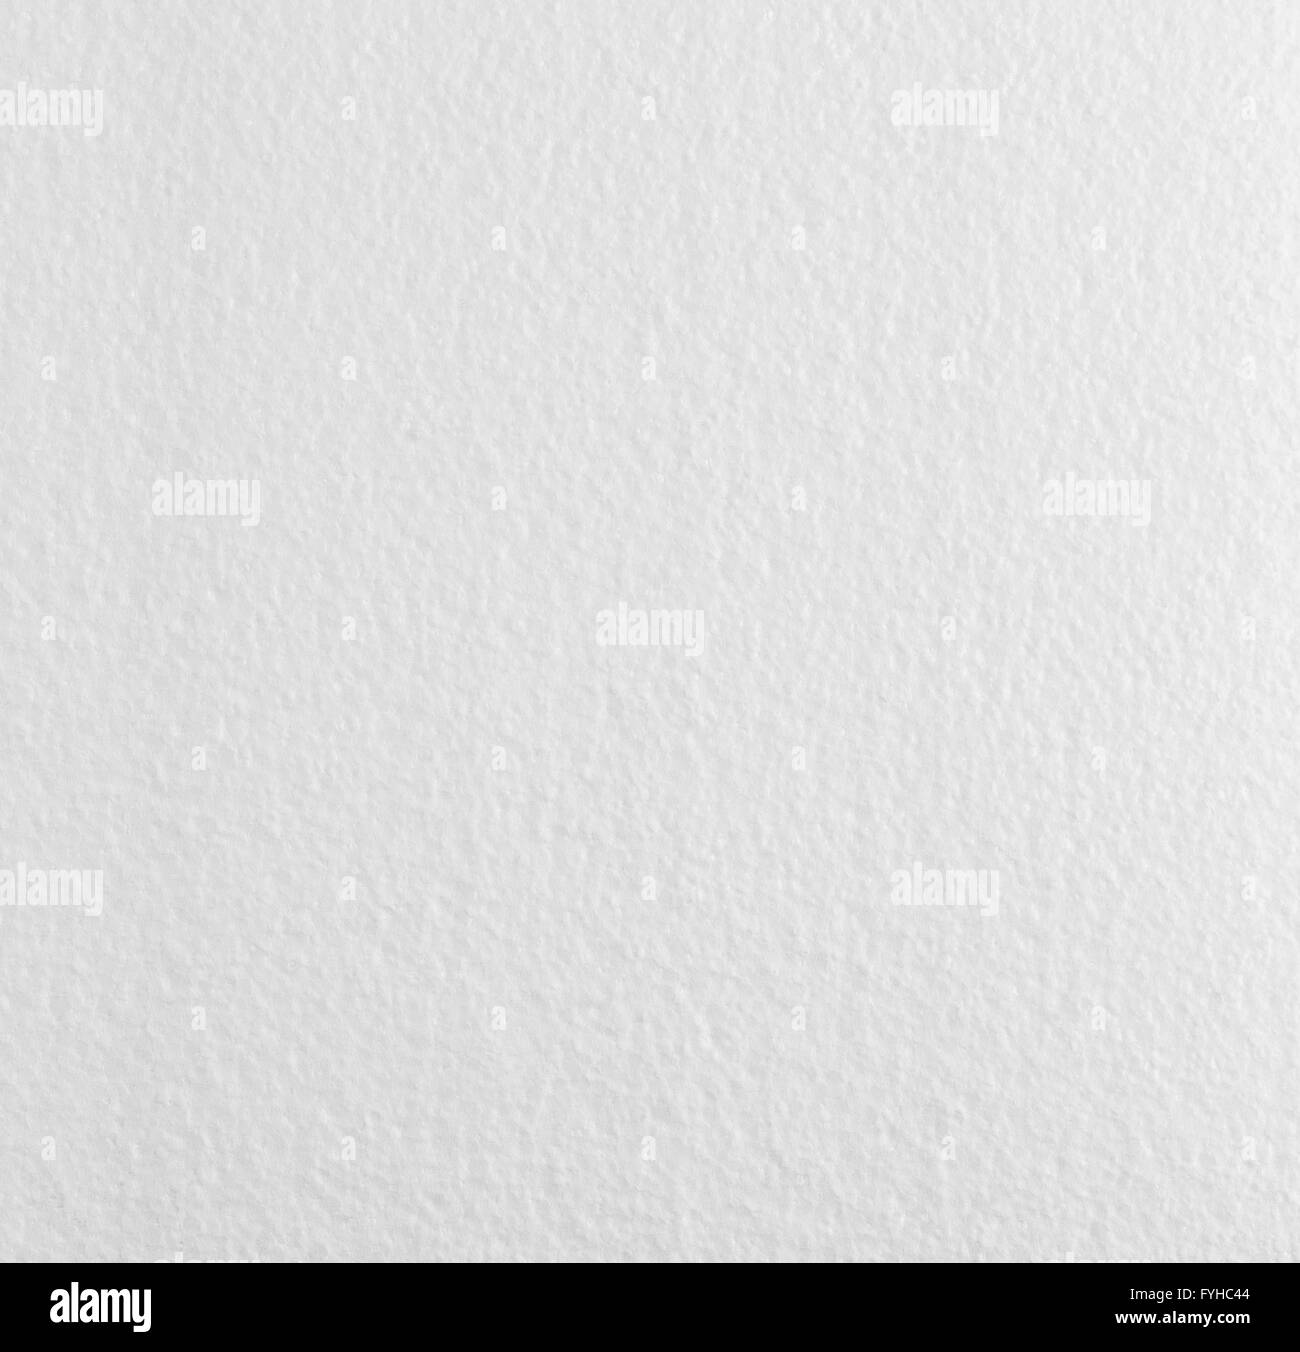 Weiße Verpackung Styropor Textur Hintergrund mit Textfreiraum. Stockfoto